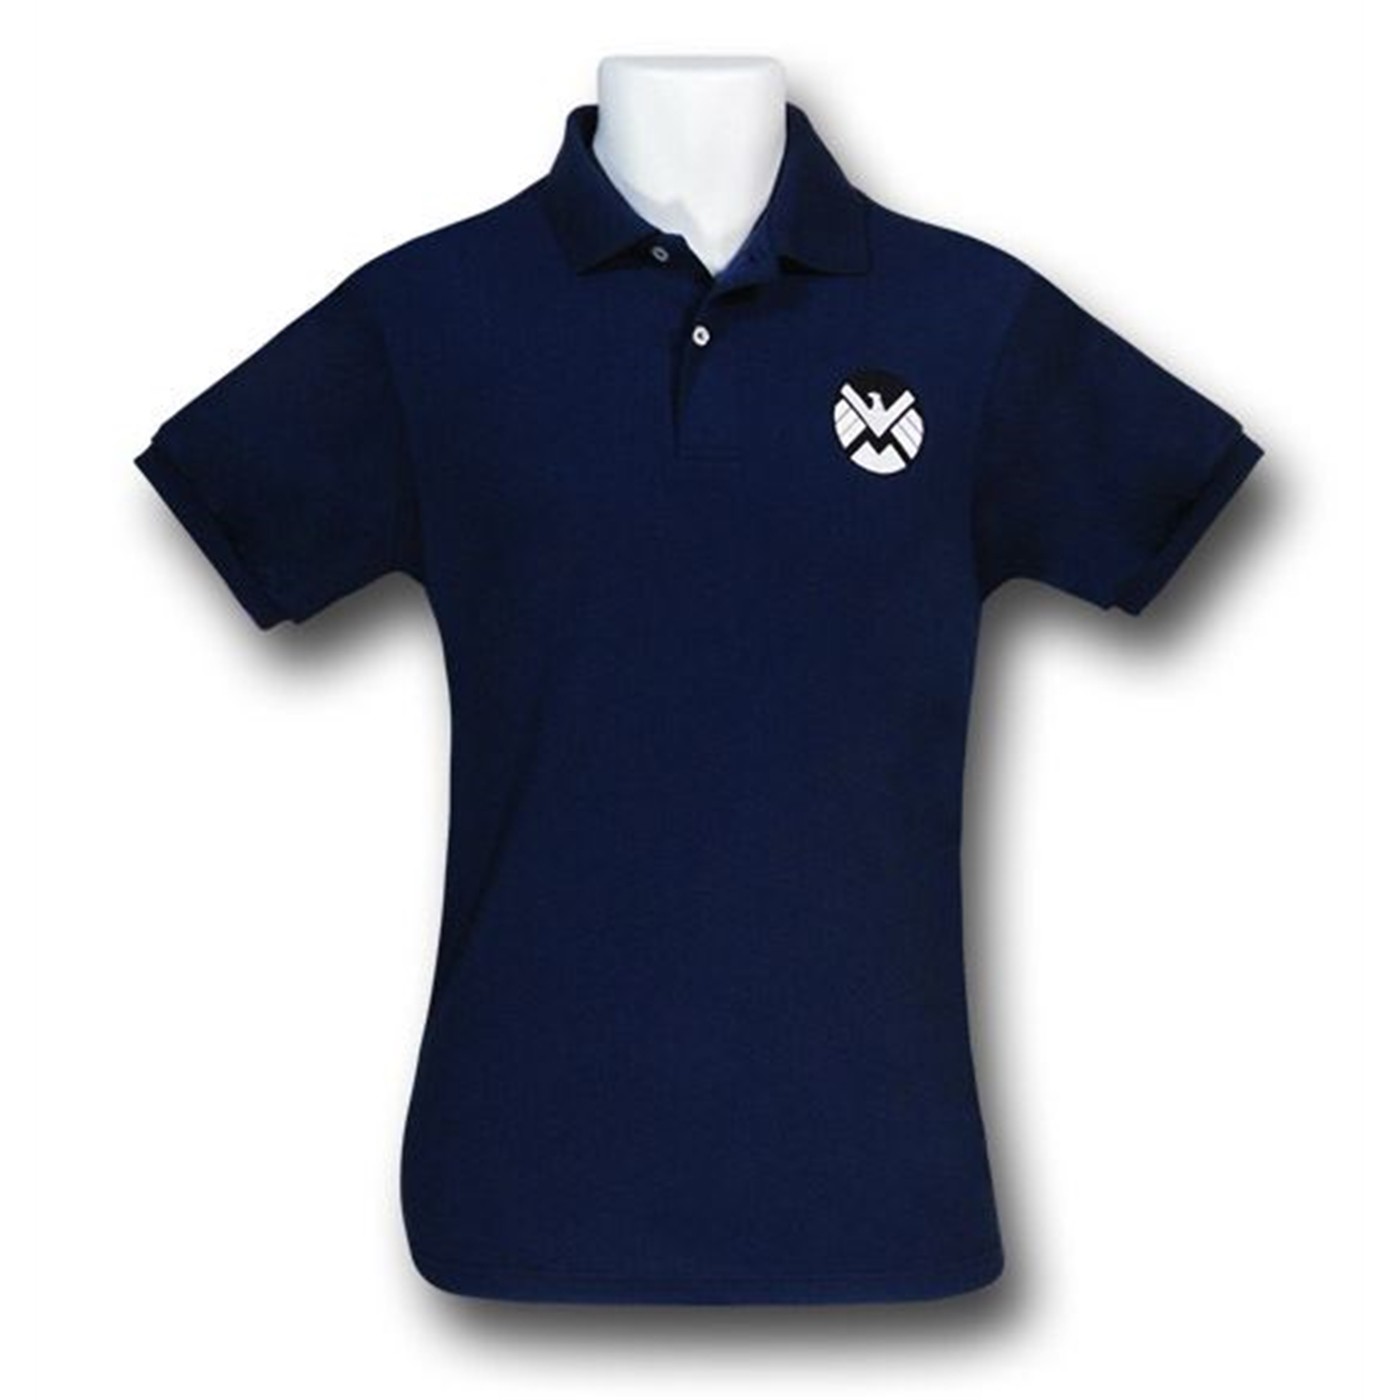 S.H.I.E.L.D. Logo Men's Polo Shirt